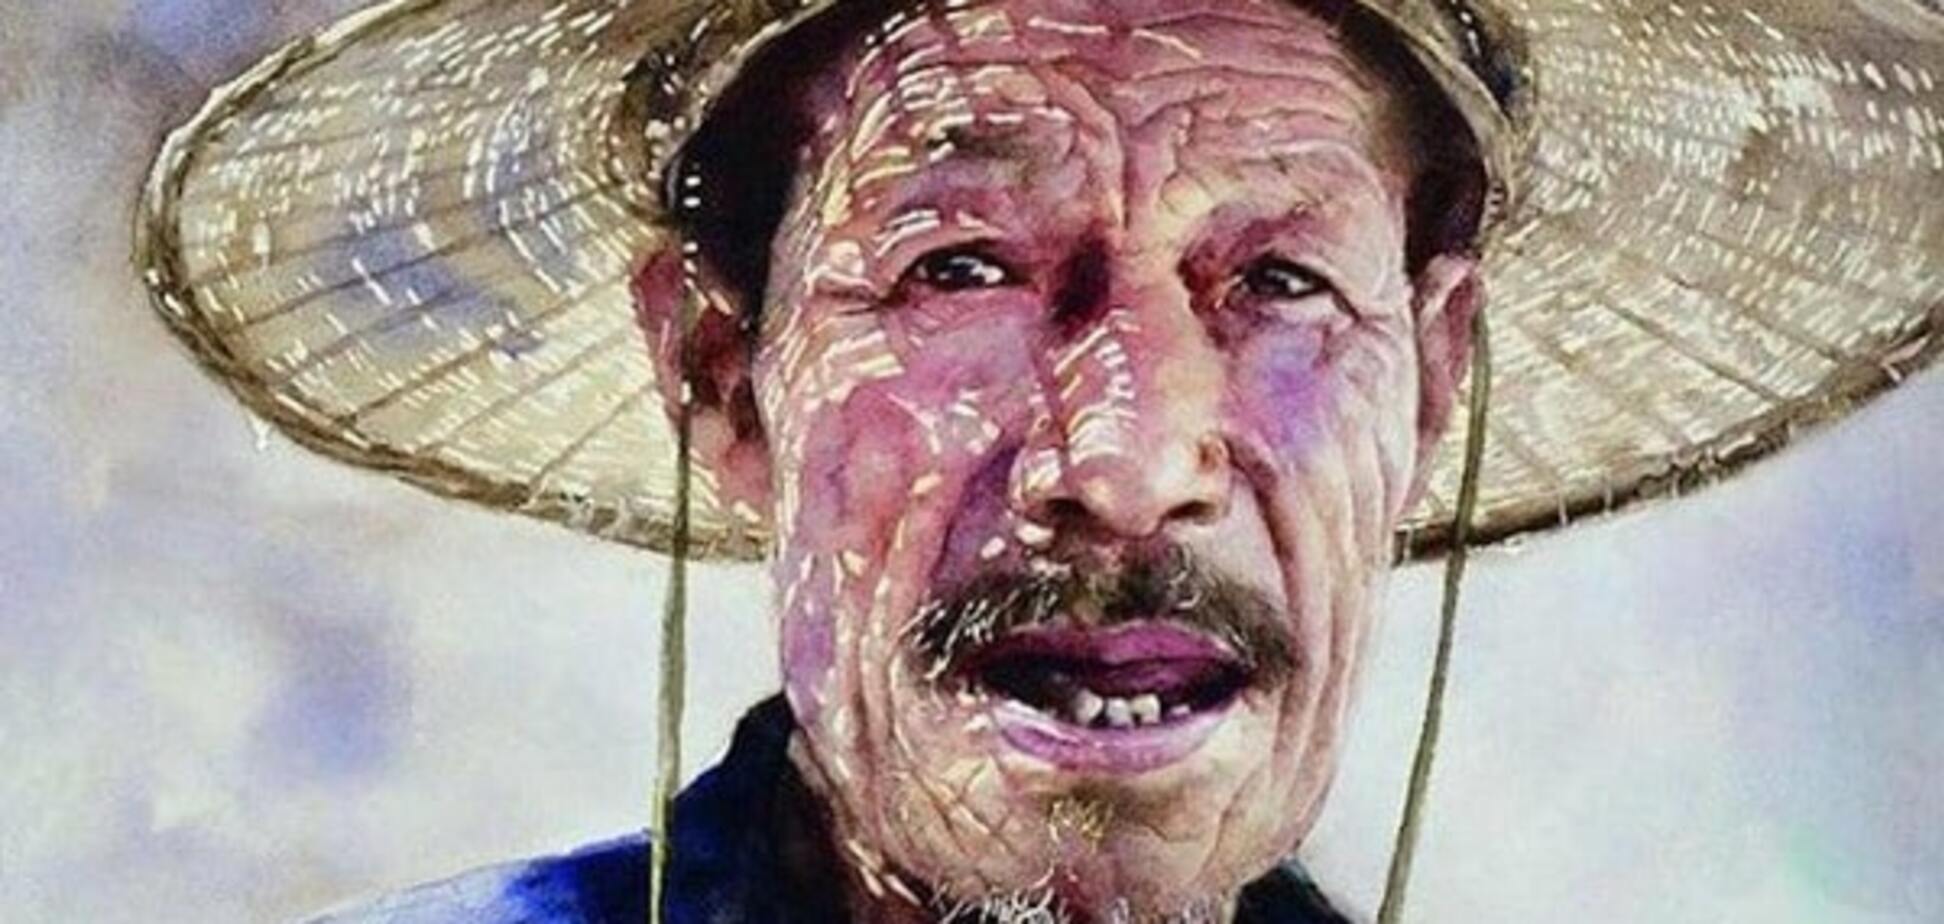 Жители Тибета: сеть покорили картины китайского художника, рисующего акварелью